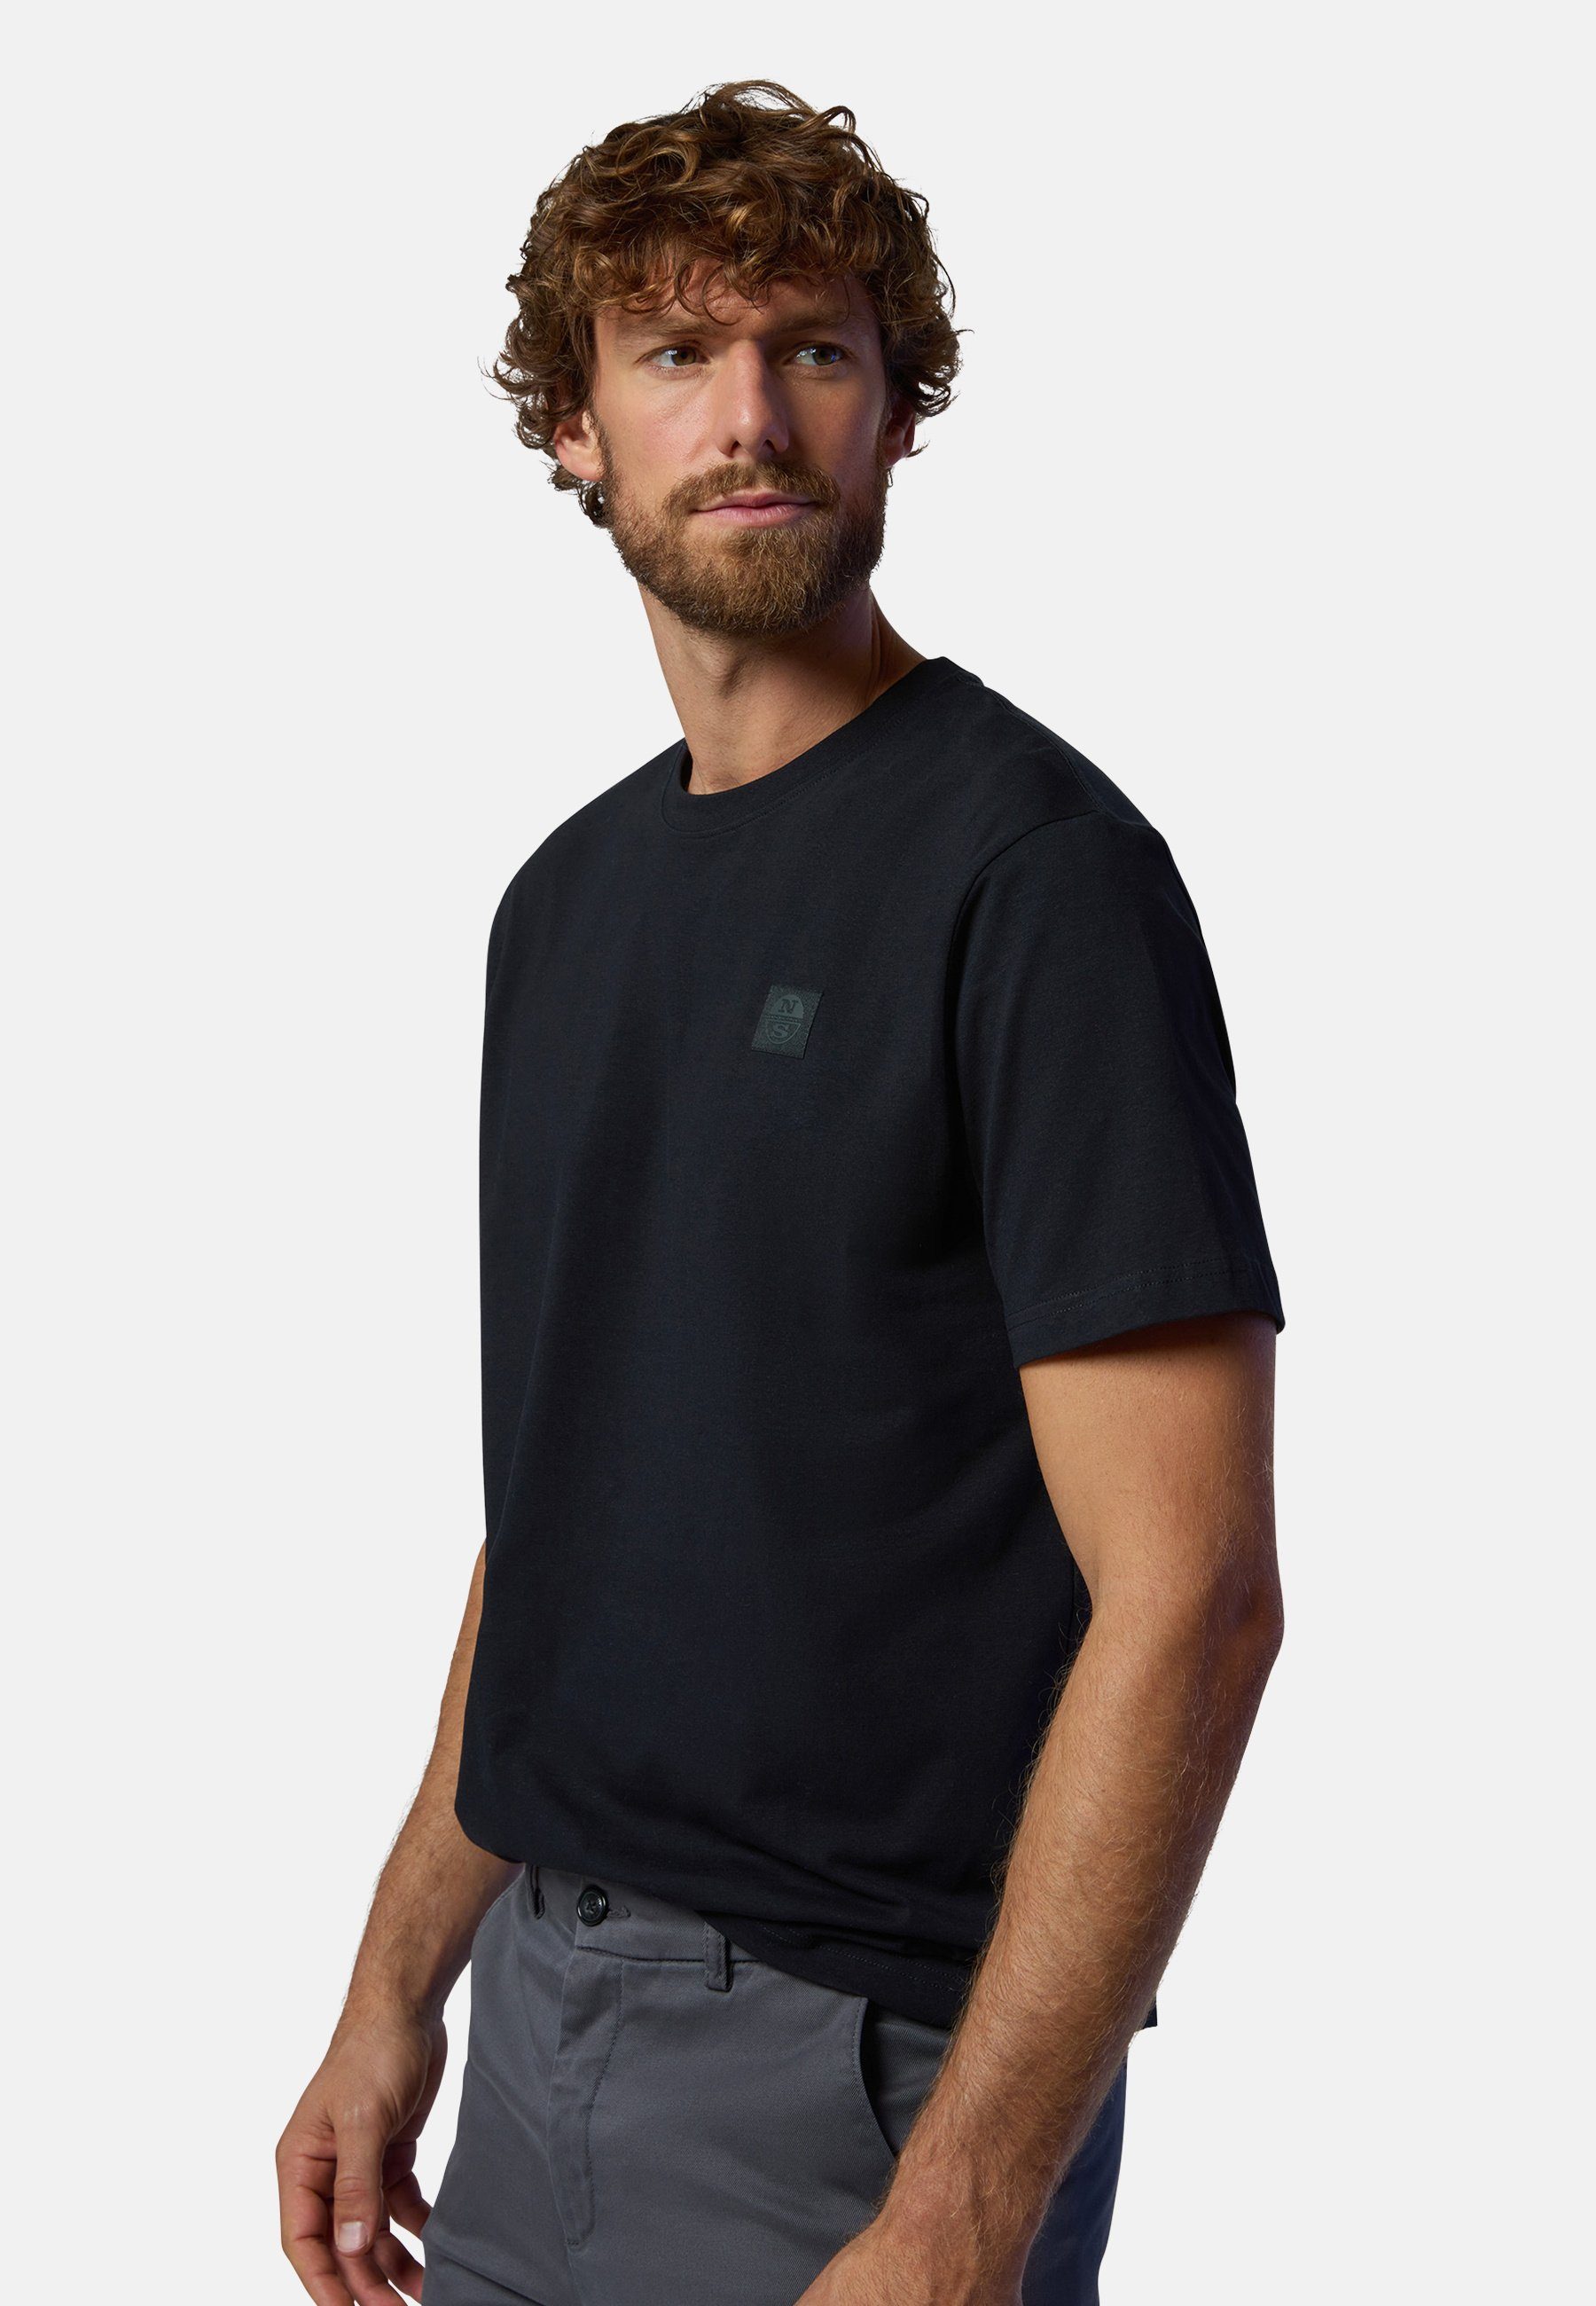 Sails mit Design klassischem T-Shirt MILKY T-Shirt North mit BLACK Logo-Aufnäher